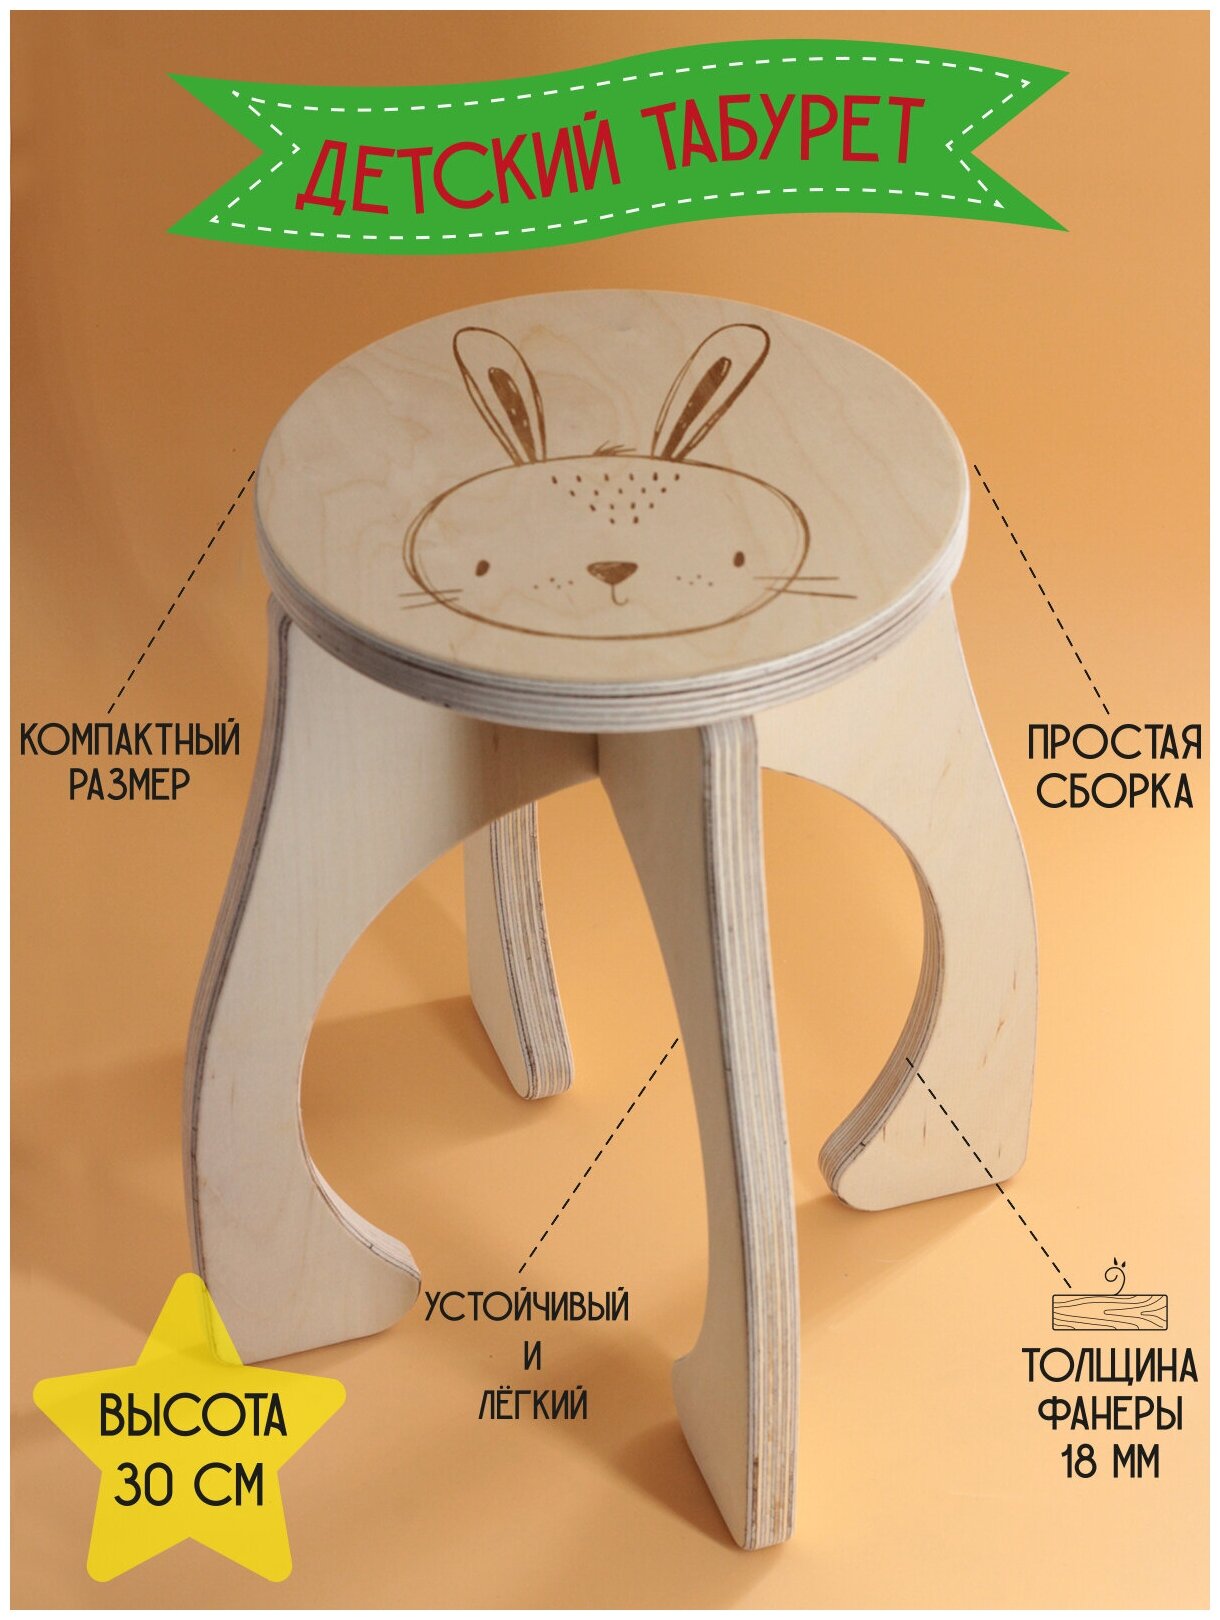 Табурет детский "Кролик", стульчик детский деревянный, табуретка детская высотой 30 см, фанера 18мм.